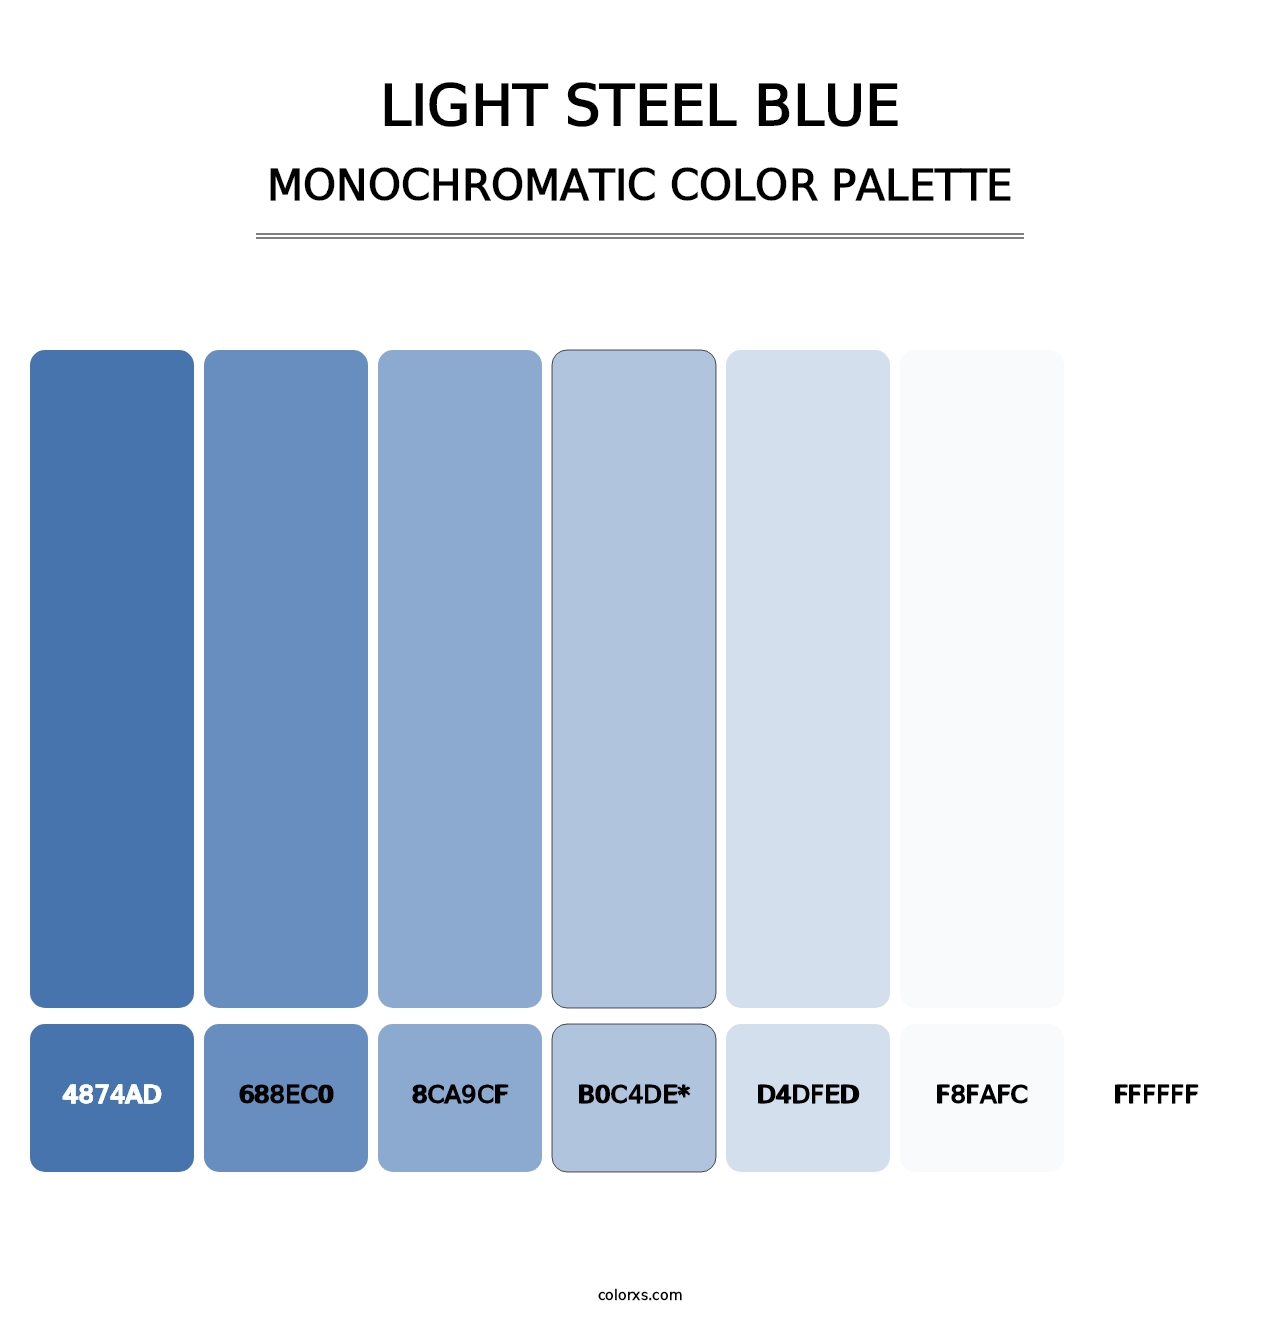 Light Steel Blue - Monochromatic Color Palette